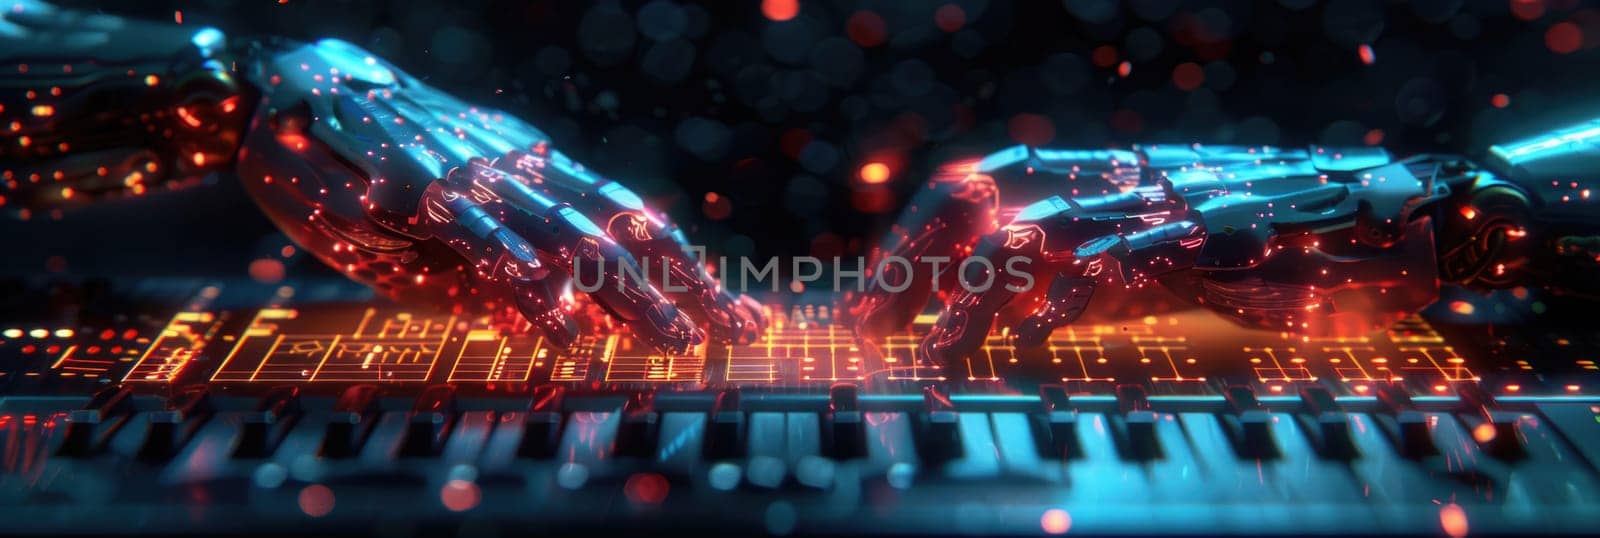 Glowing Lights Illuminate Piano Keyboard by but_photo